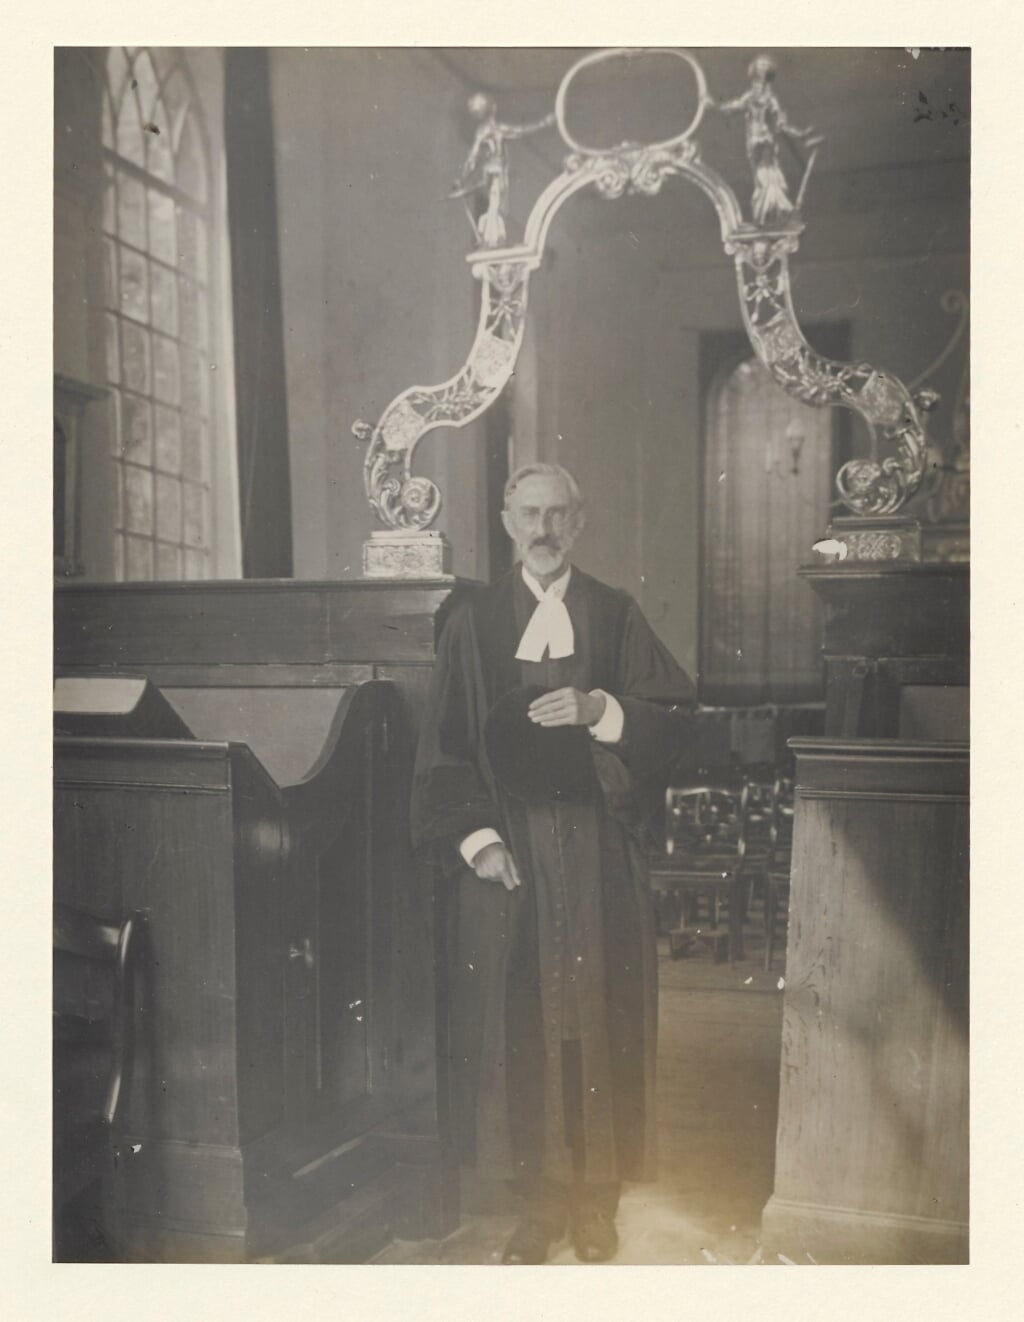 Dominee Brinkerink, samensteller van de catalogus van de librije uit 1908.